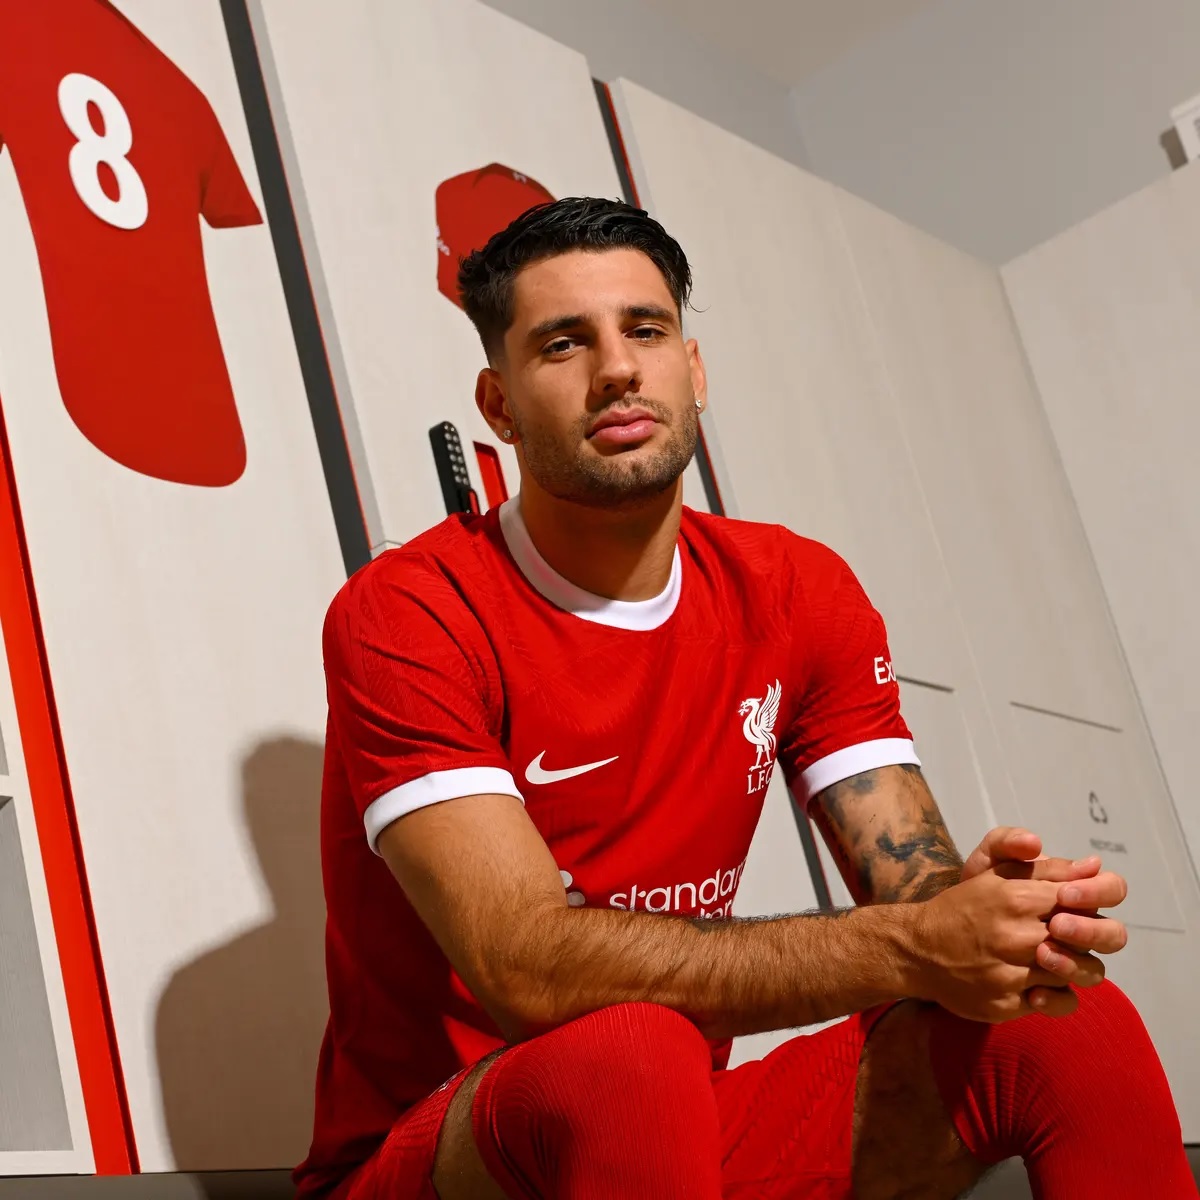 Szoboszlai hứa hẹn đem về chiều sâu cho hàng tiền vệ của Liverpool. Ảnh: AFP